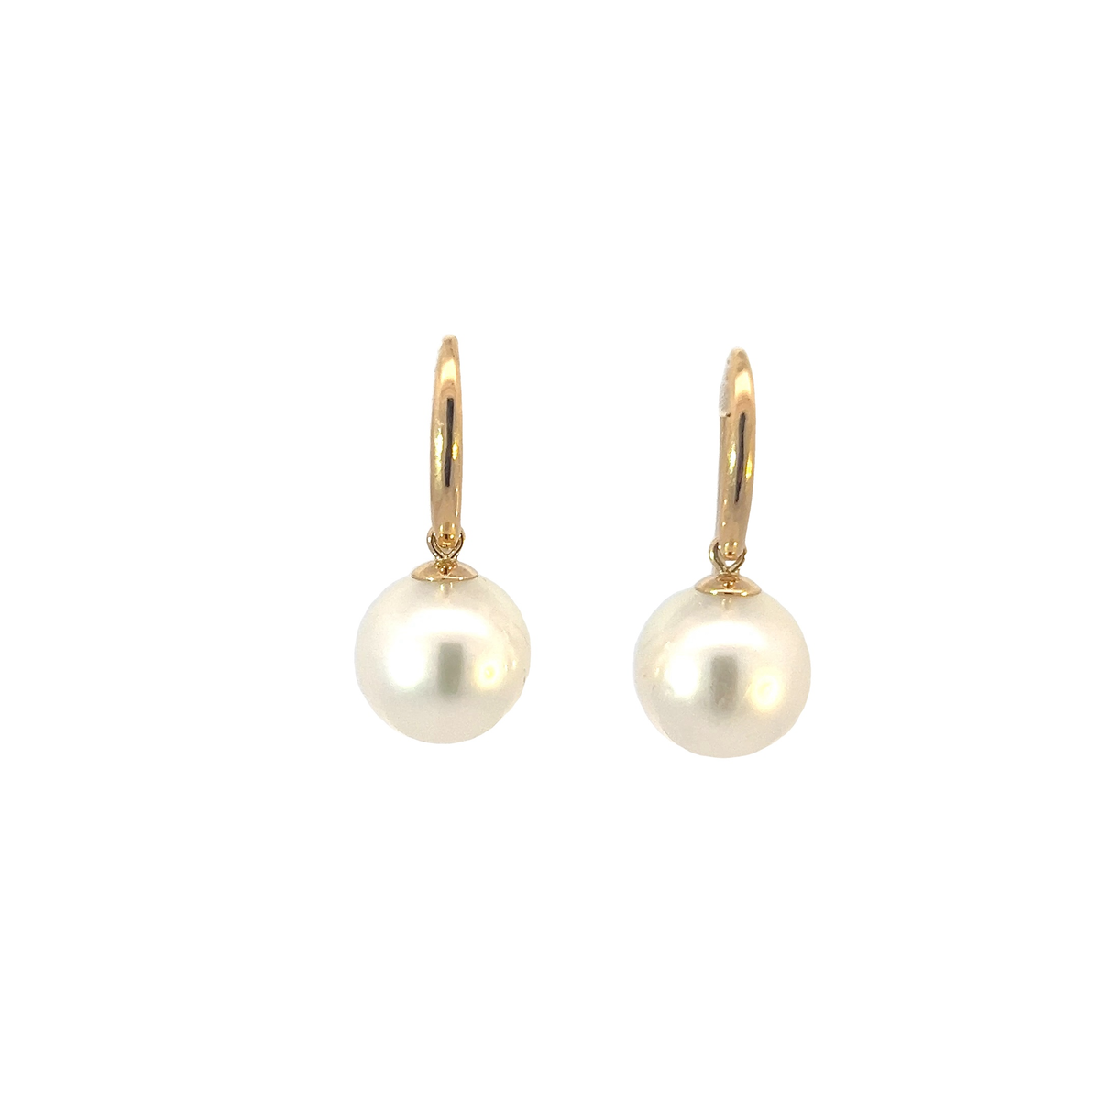 Pair of 10-11mm South Sea 18kt Yellow gold dangling hook earrings - Masterpiece Jewellery Opal & Gems Sydney Australia | Online Shop